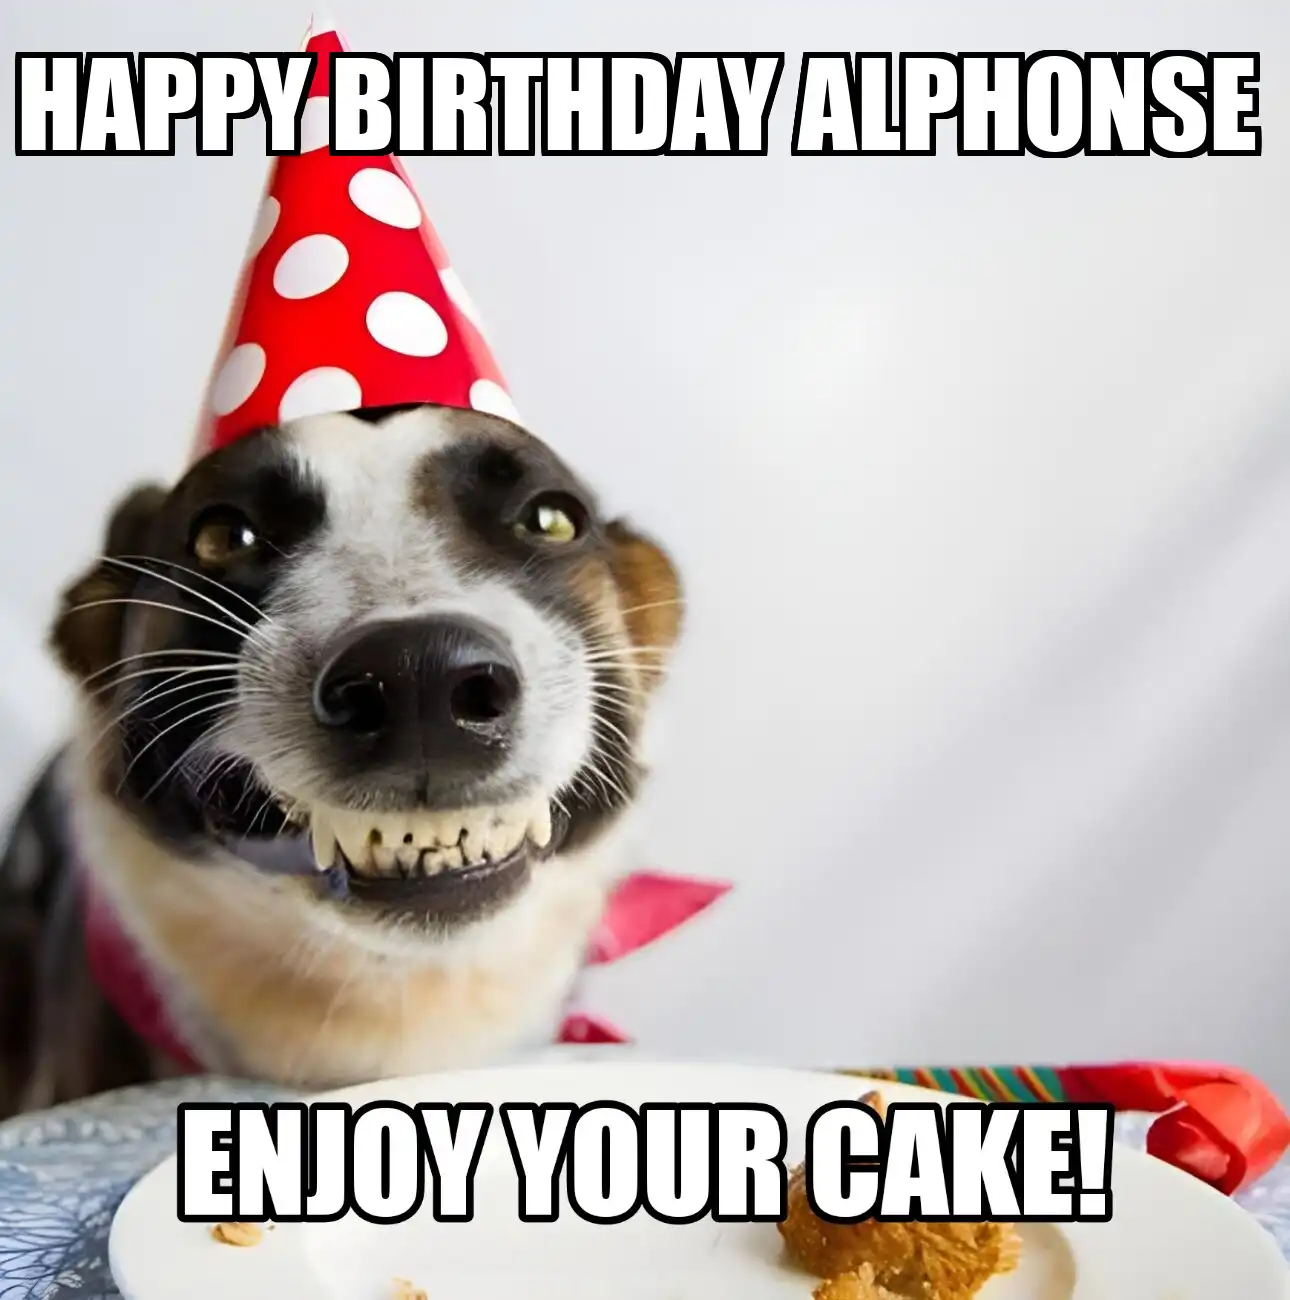 Happy Birthday Alphonse Enjoy Your Cake Dog Meme